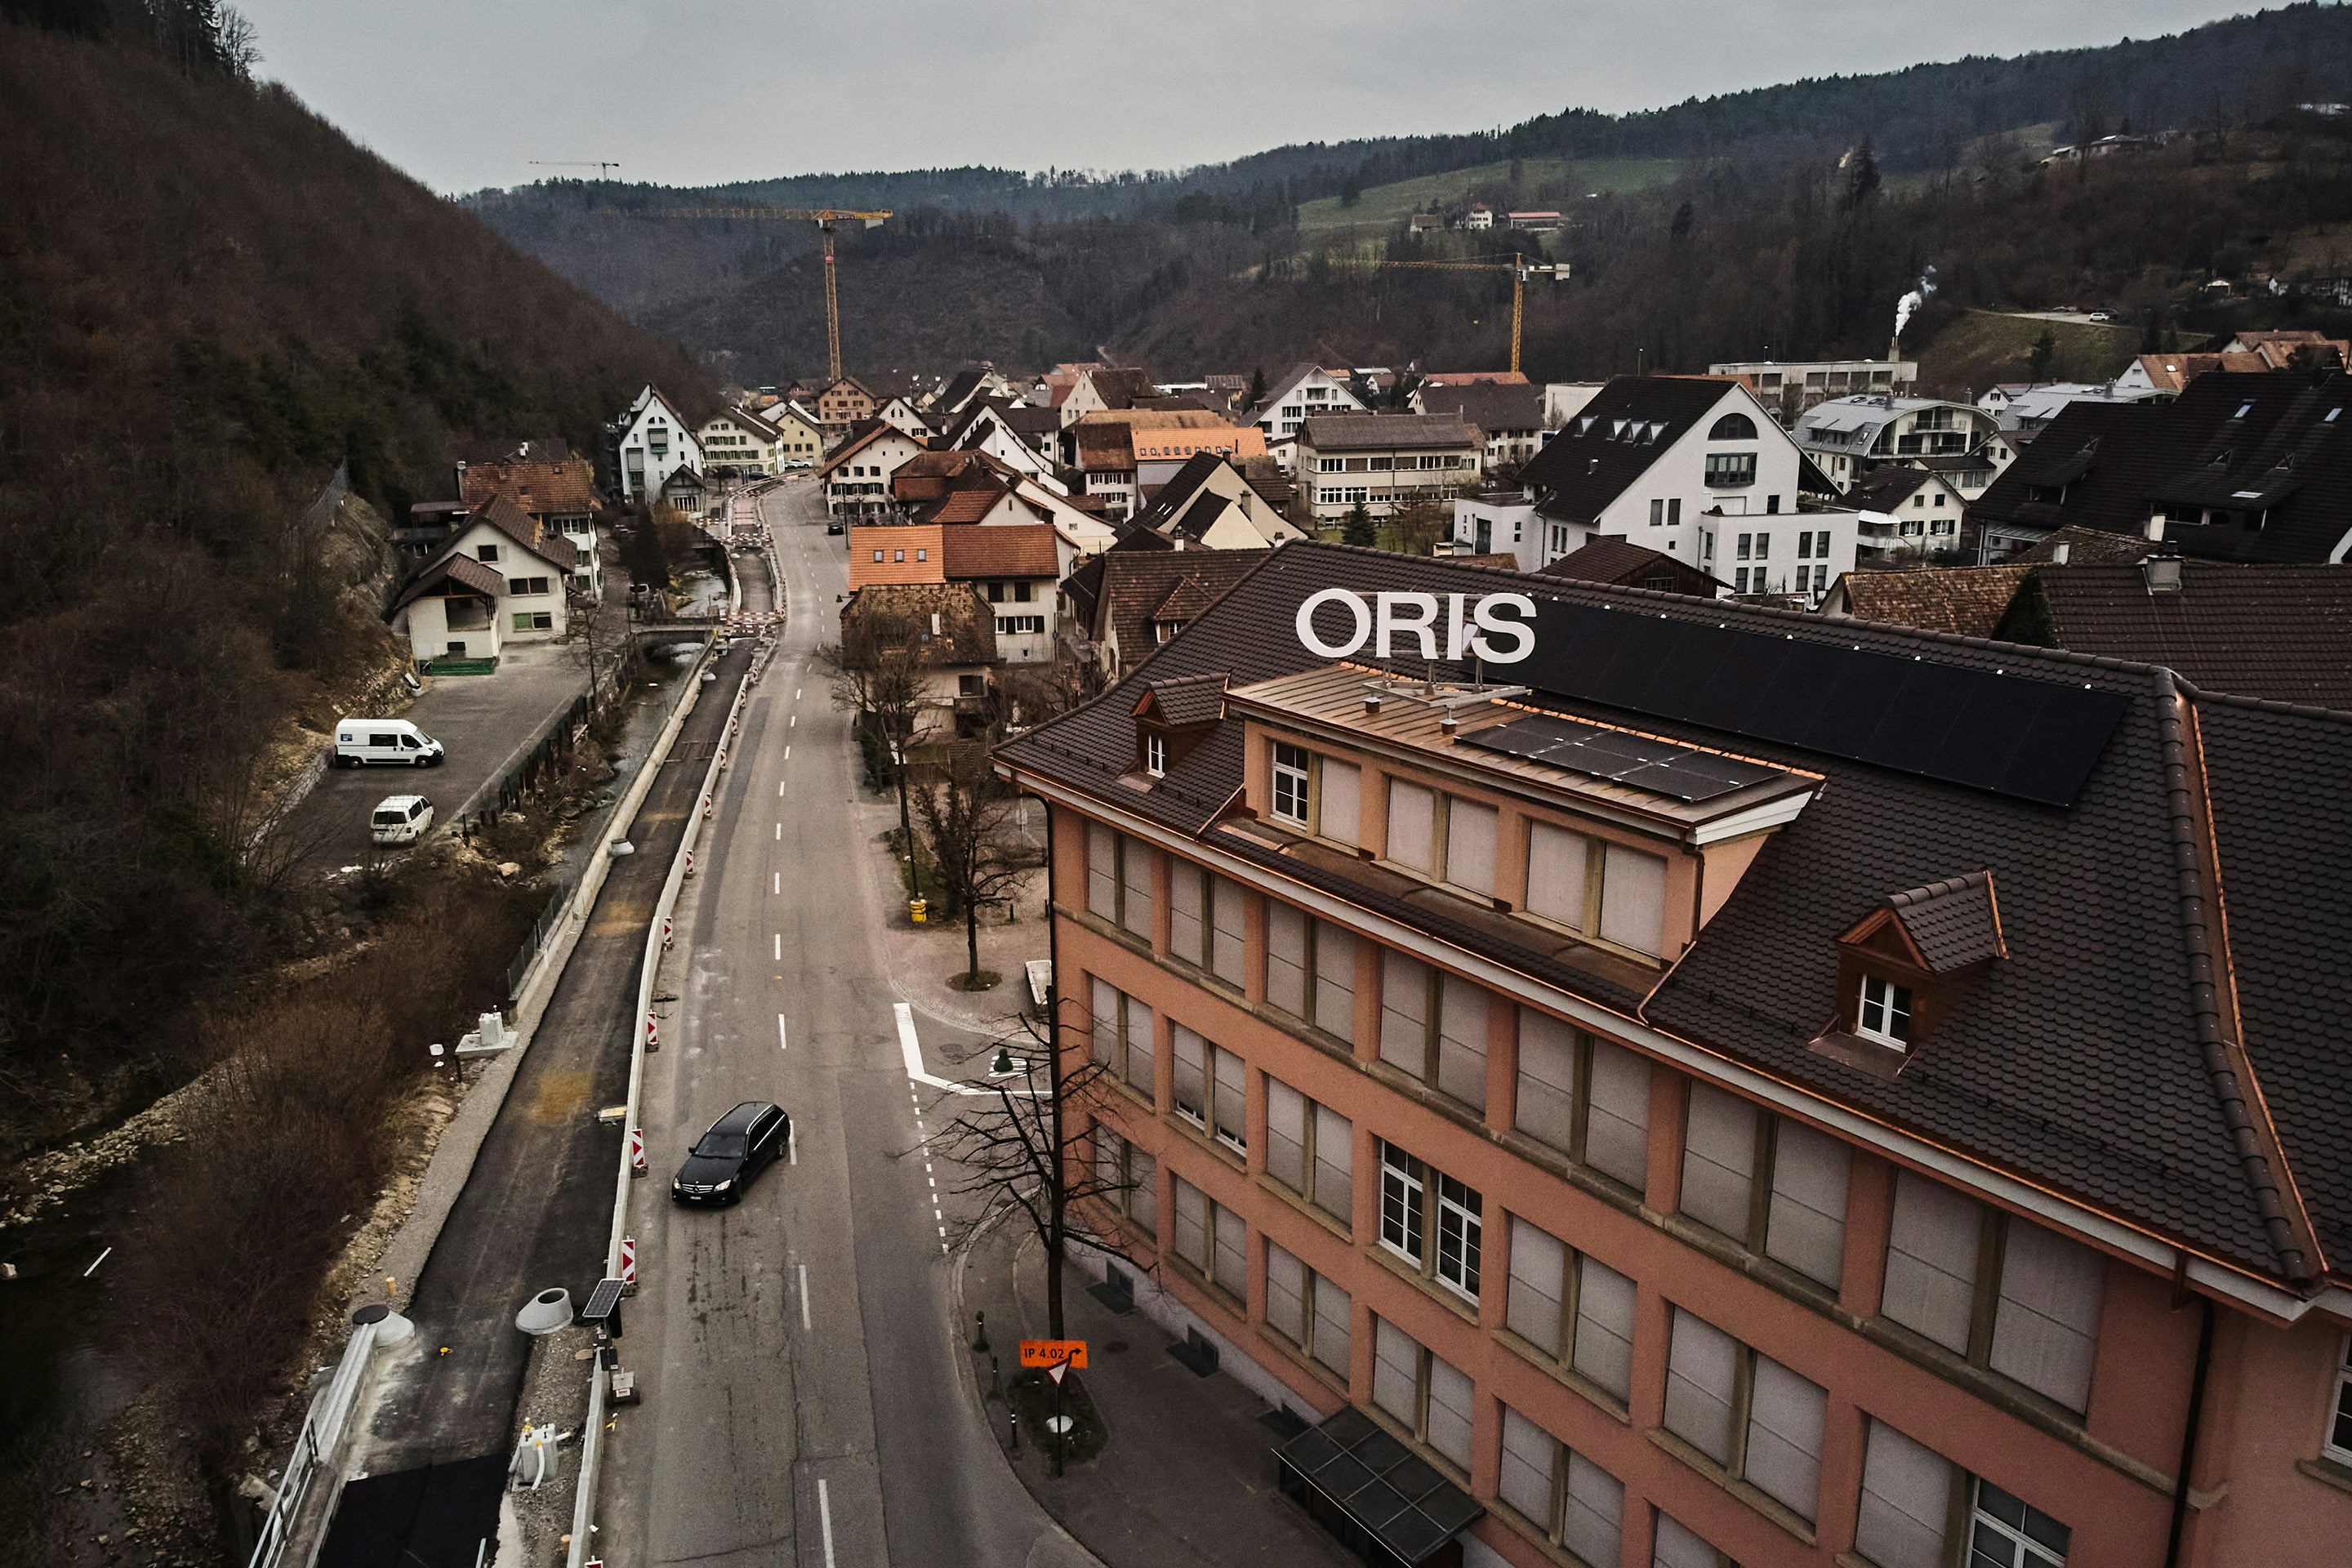 A view of a town with an Oris sign on top of a building